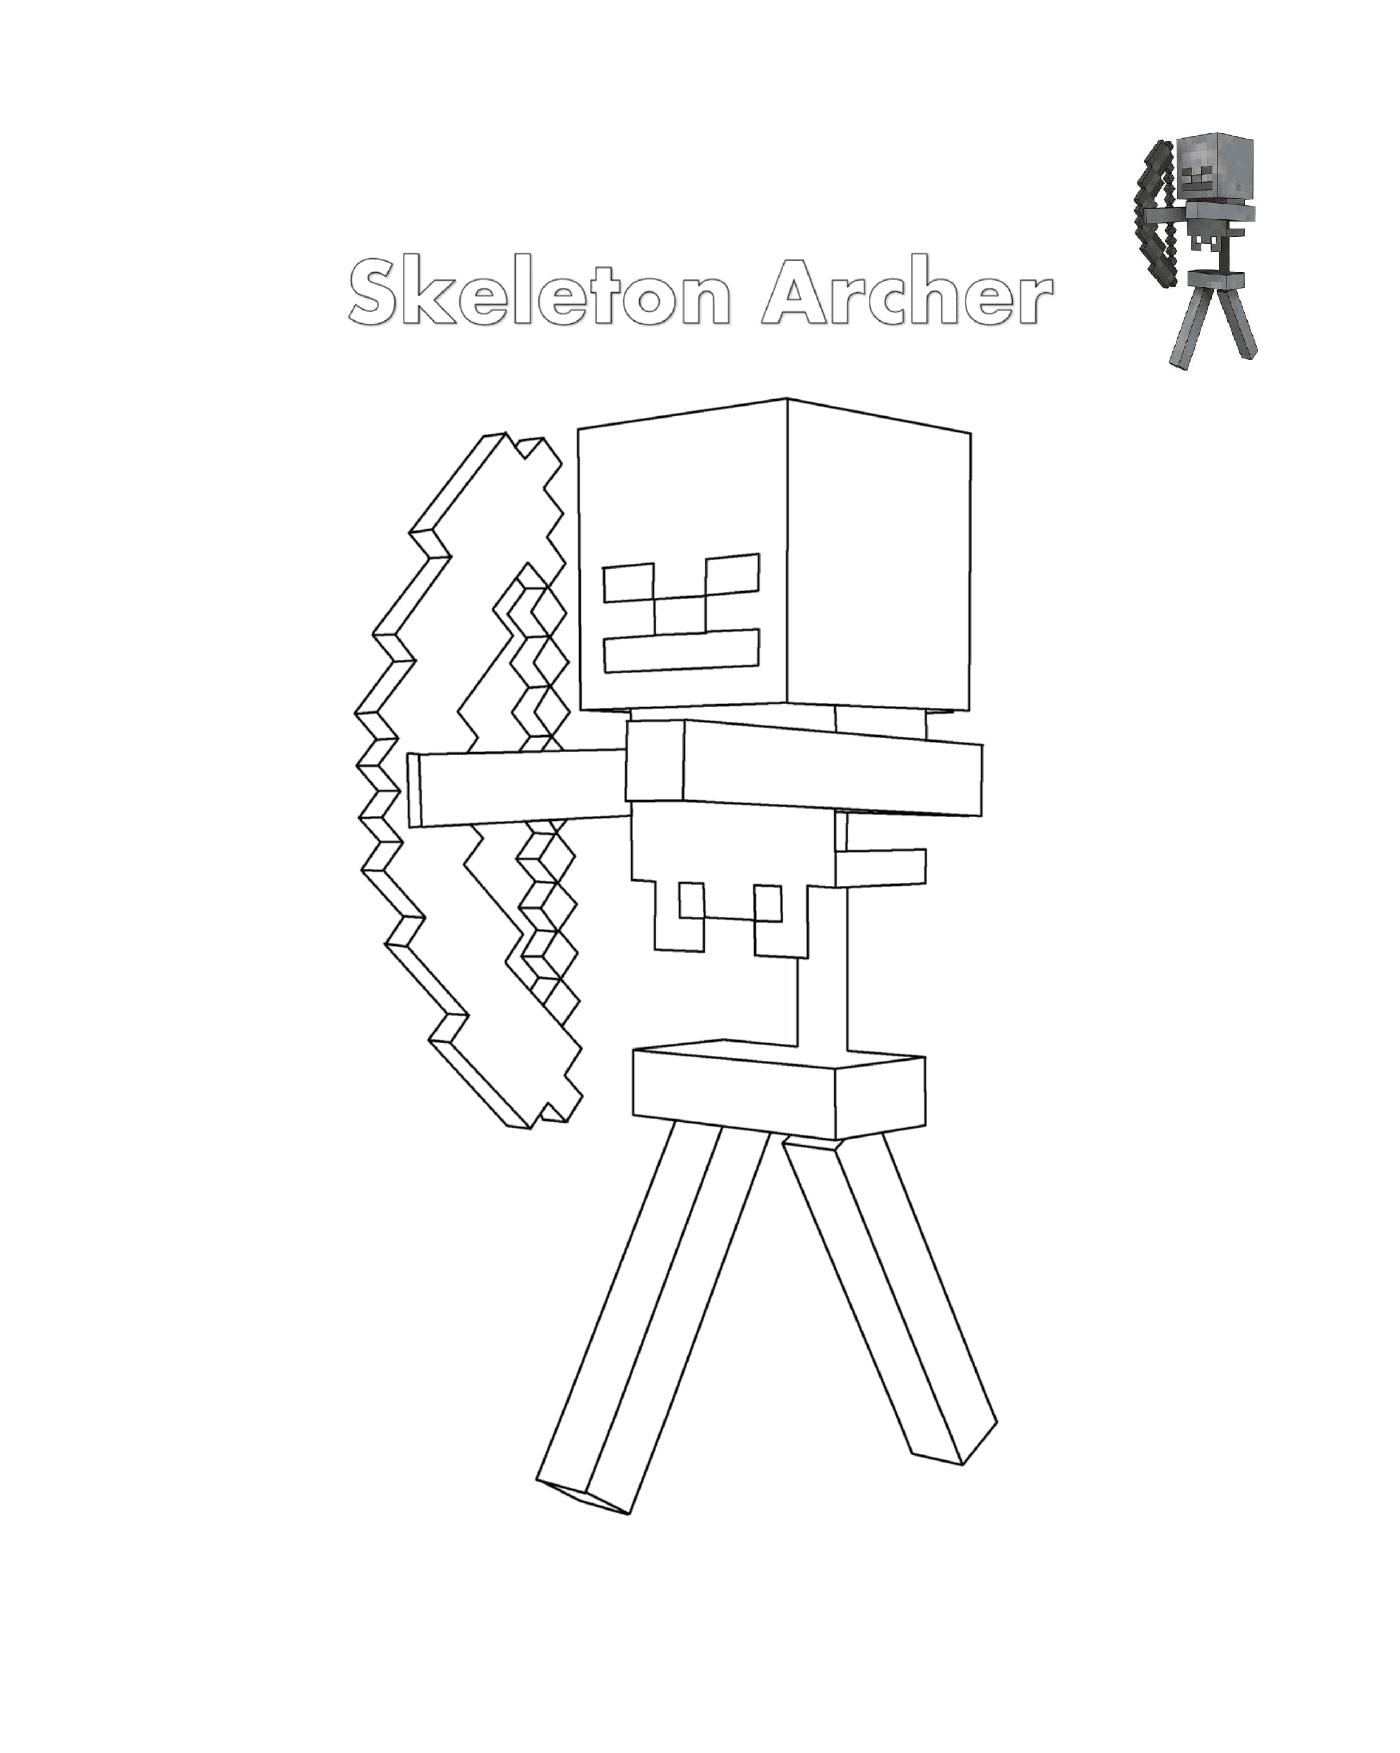  Esqueleto Archer Minecraft: um esqueleto arqueiro 